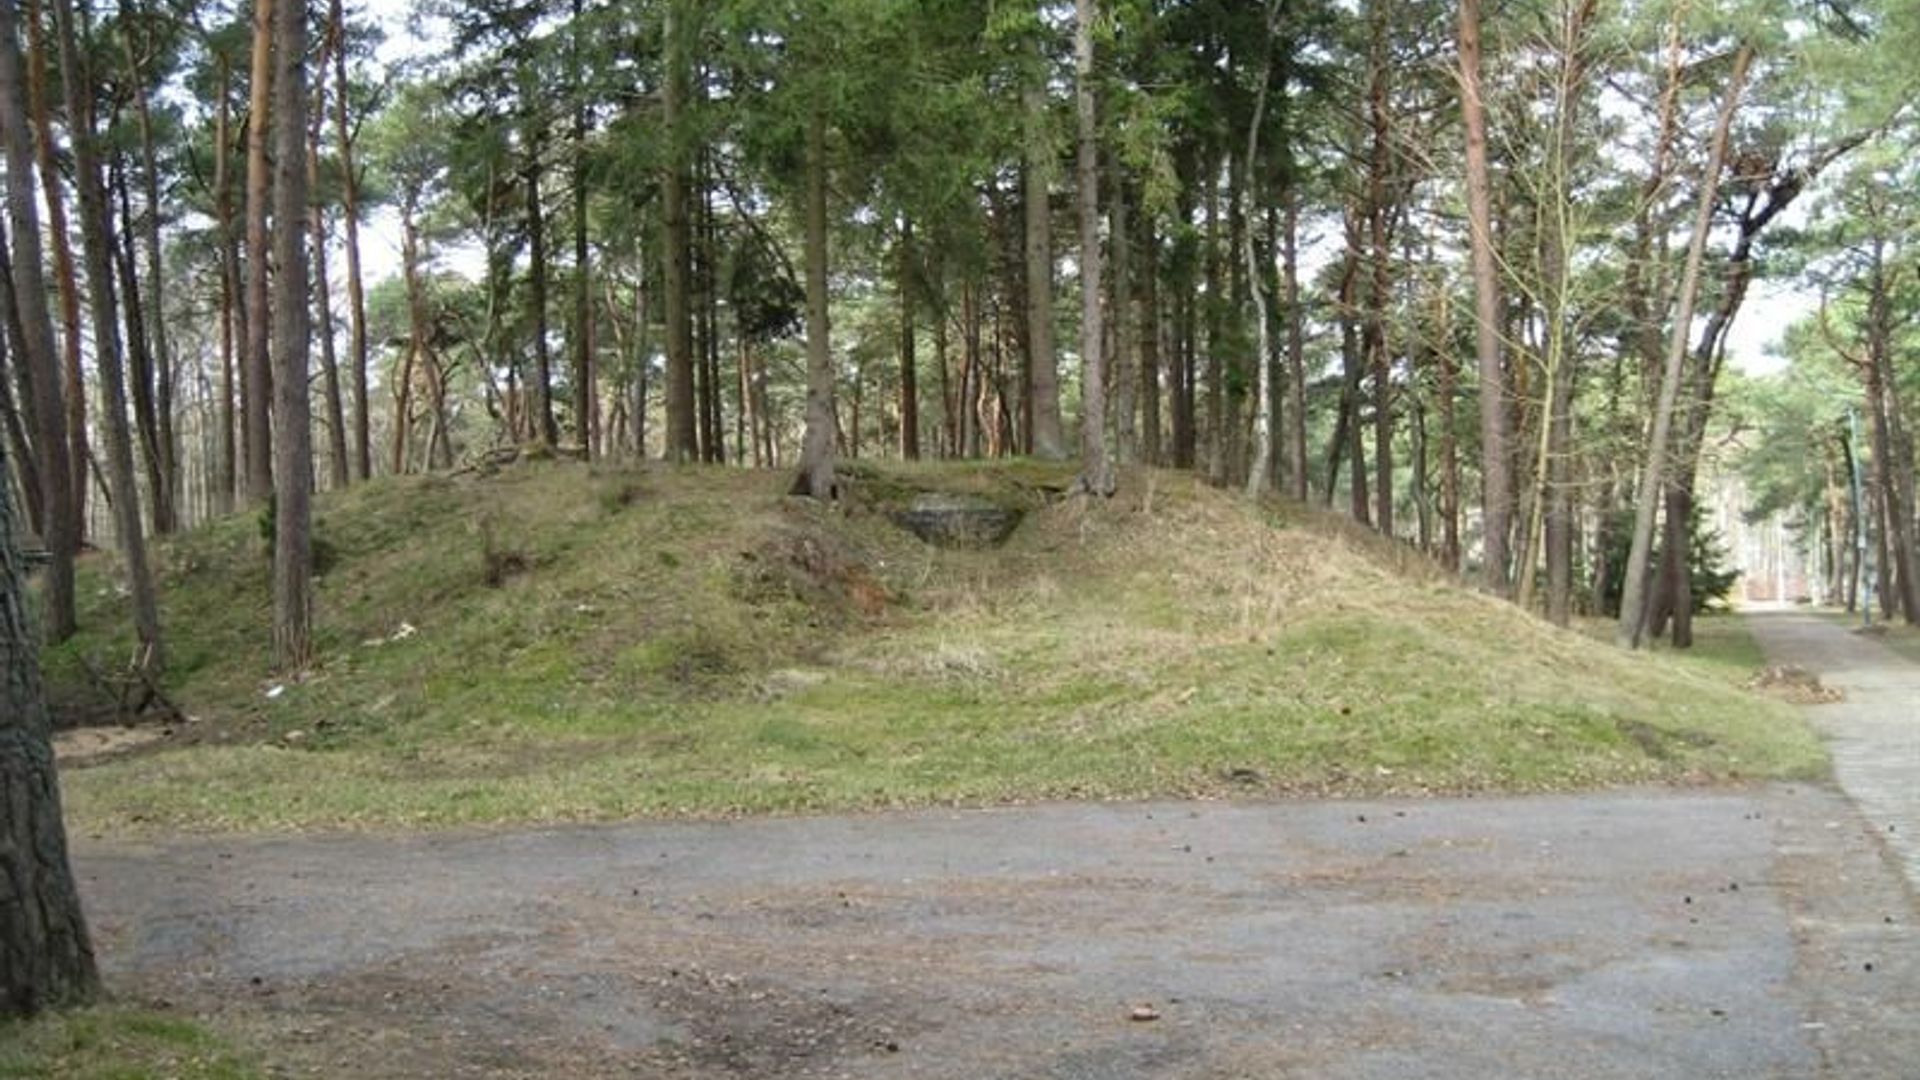 Kukuliškių baterijos bunkeris